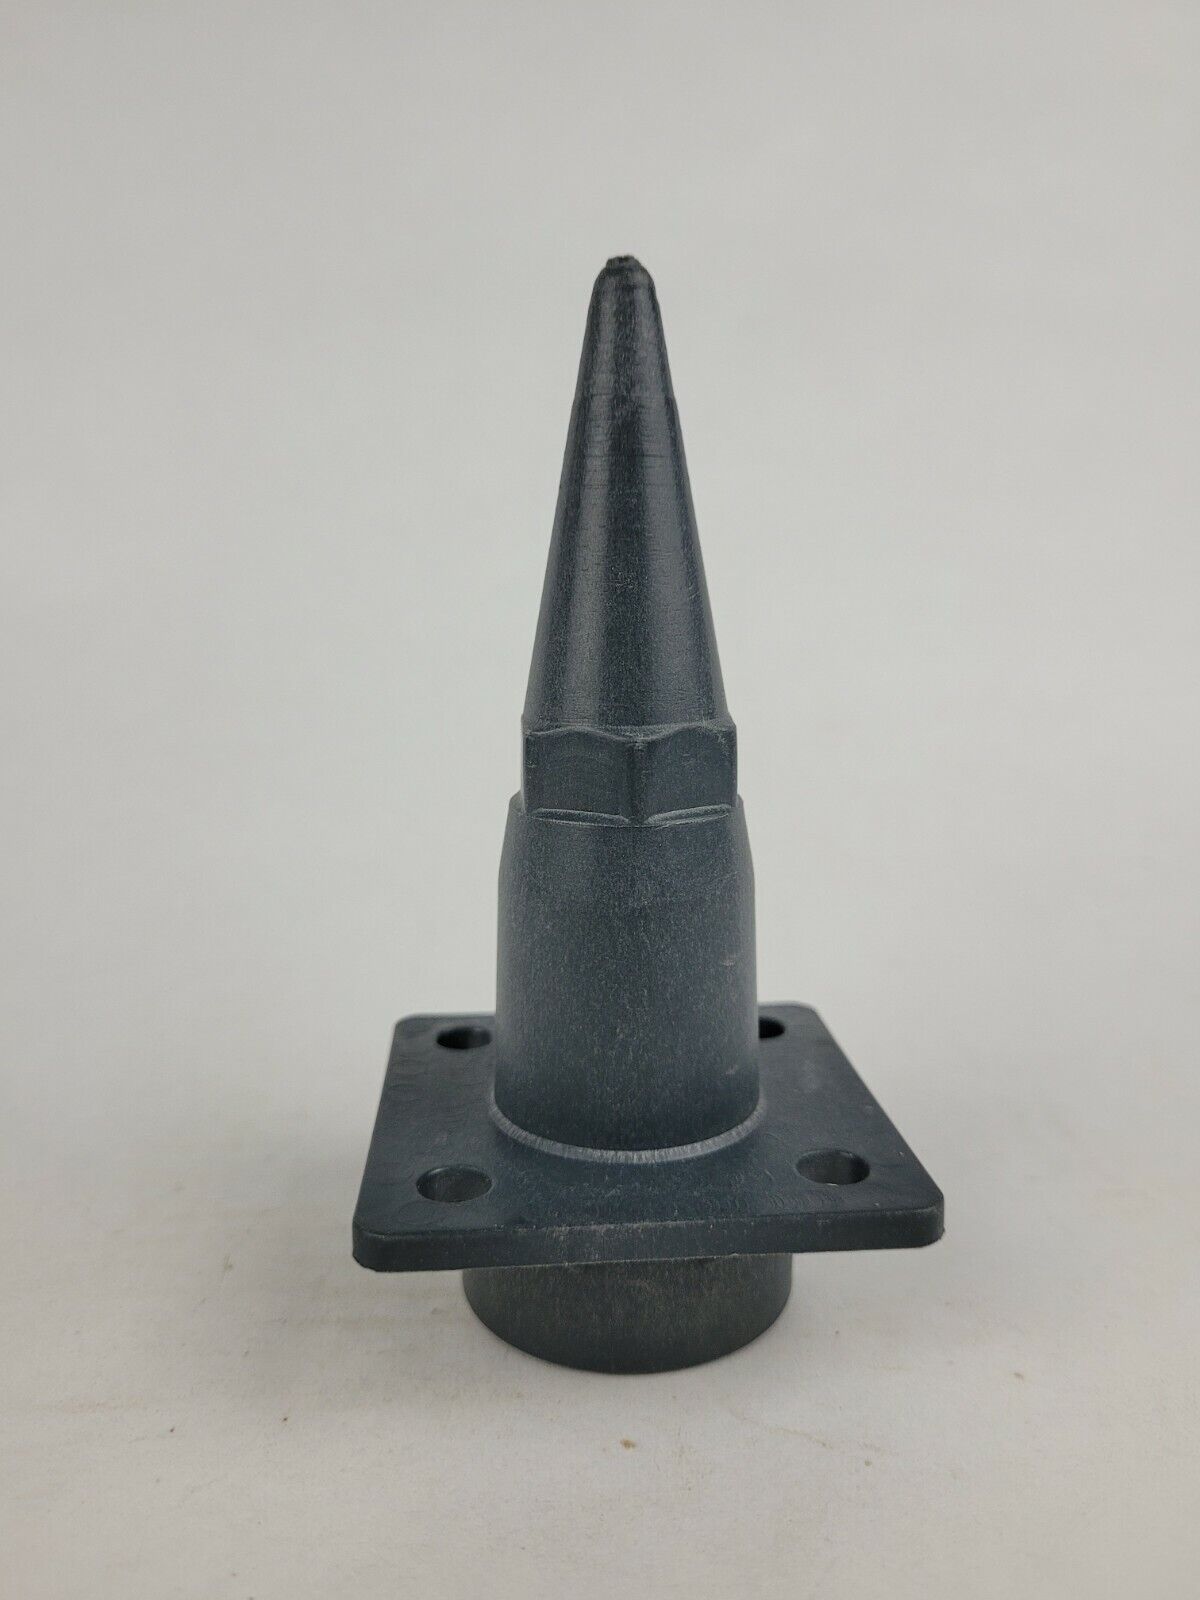 Plastic Cone Nozzle Micro Hydro Pm Generator Pelton And Turgo Wheels Me2201